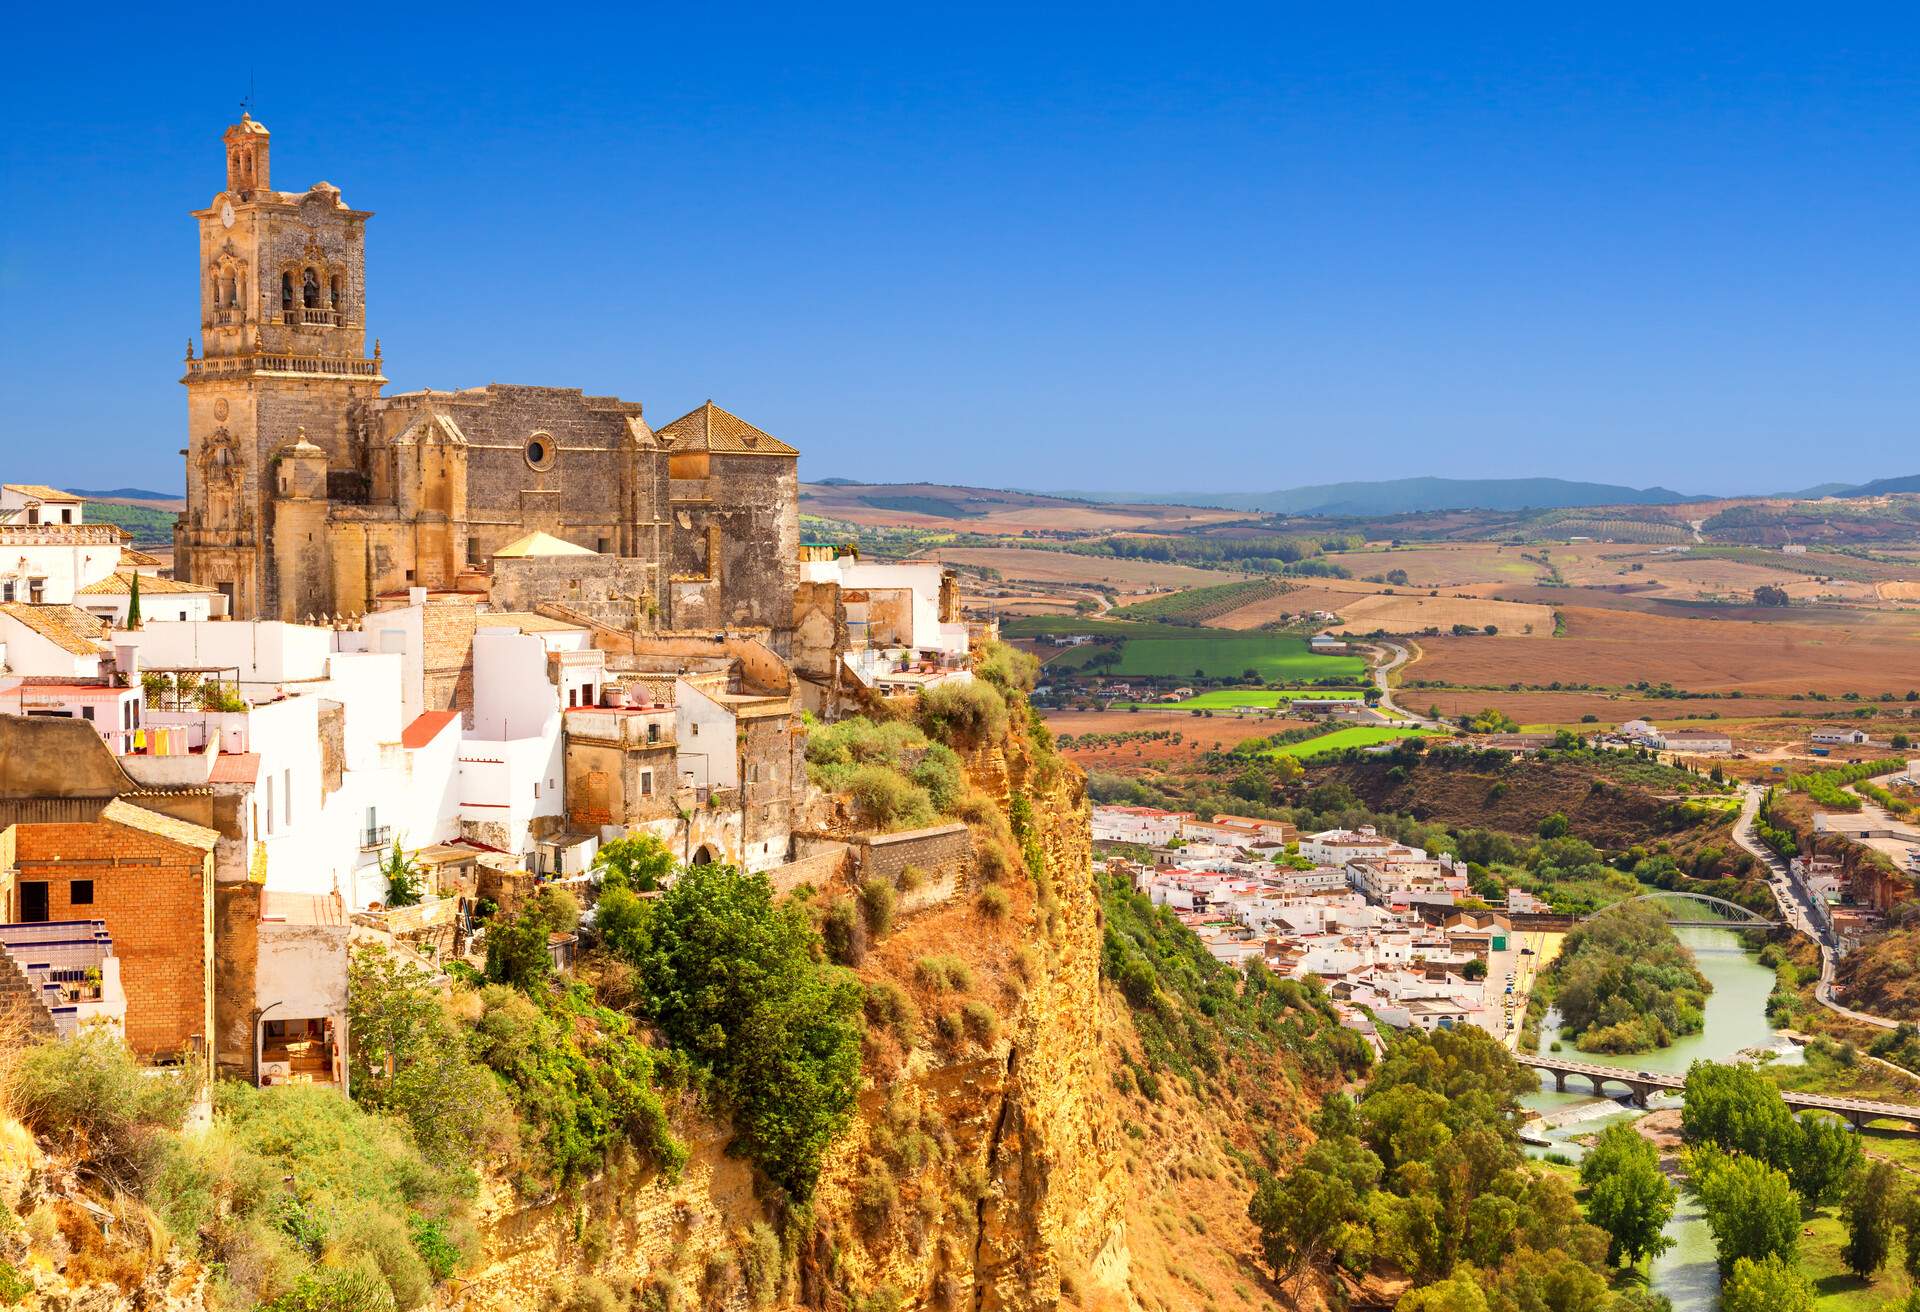 DEST_SPAIN_CADIZ-white town built on a rock along Guadalete river-GettyImages-515373364